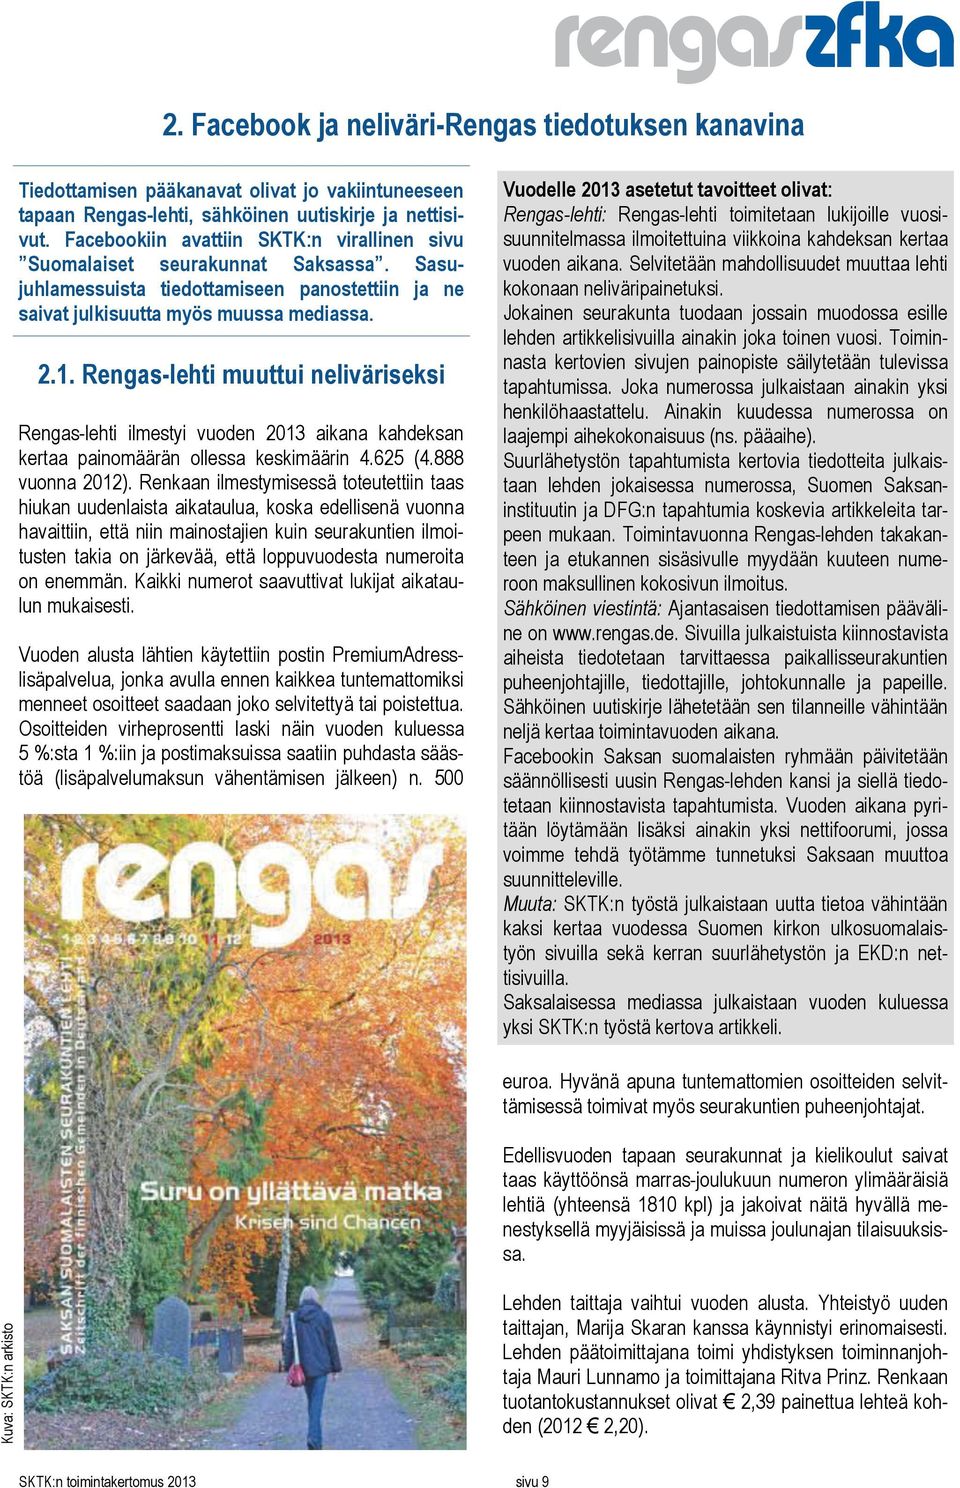 Rengas-lehti muuttui neliväriseksi Rengas-lehti ilmestyi vuoden 2013 aikana kahdeksan kertaa painomäärän ollessa keskimäärin 4.625 (4.888 vuonna 2012).